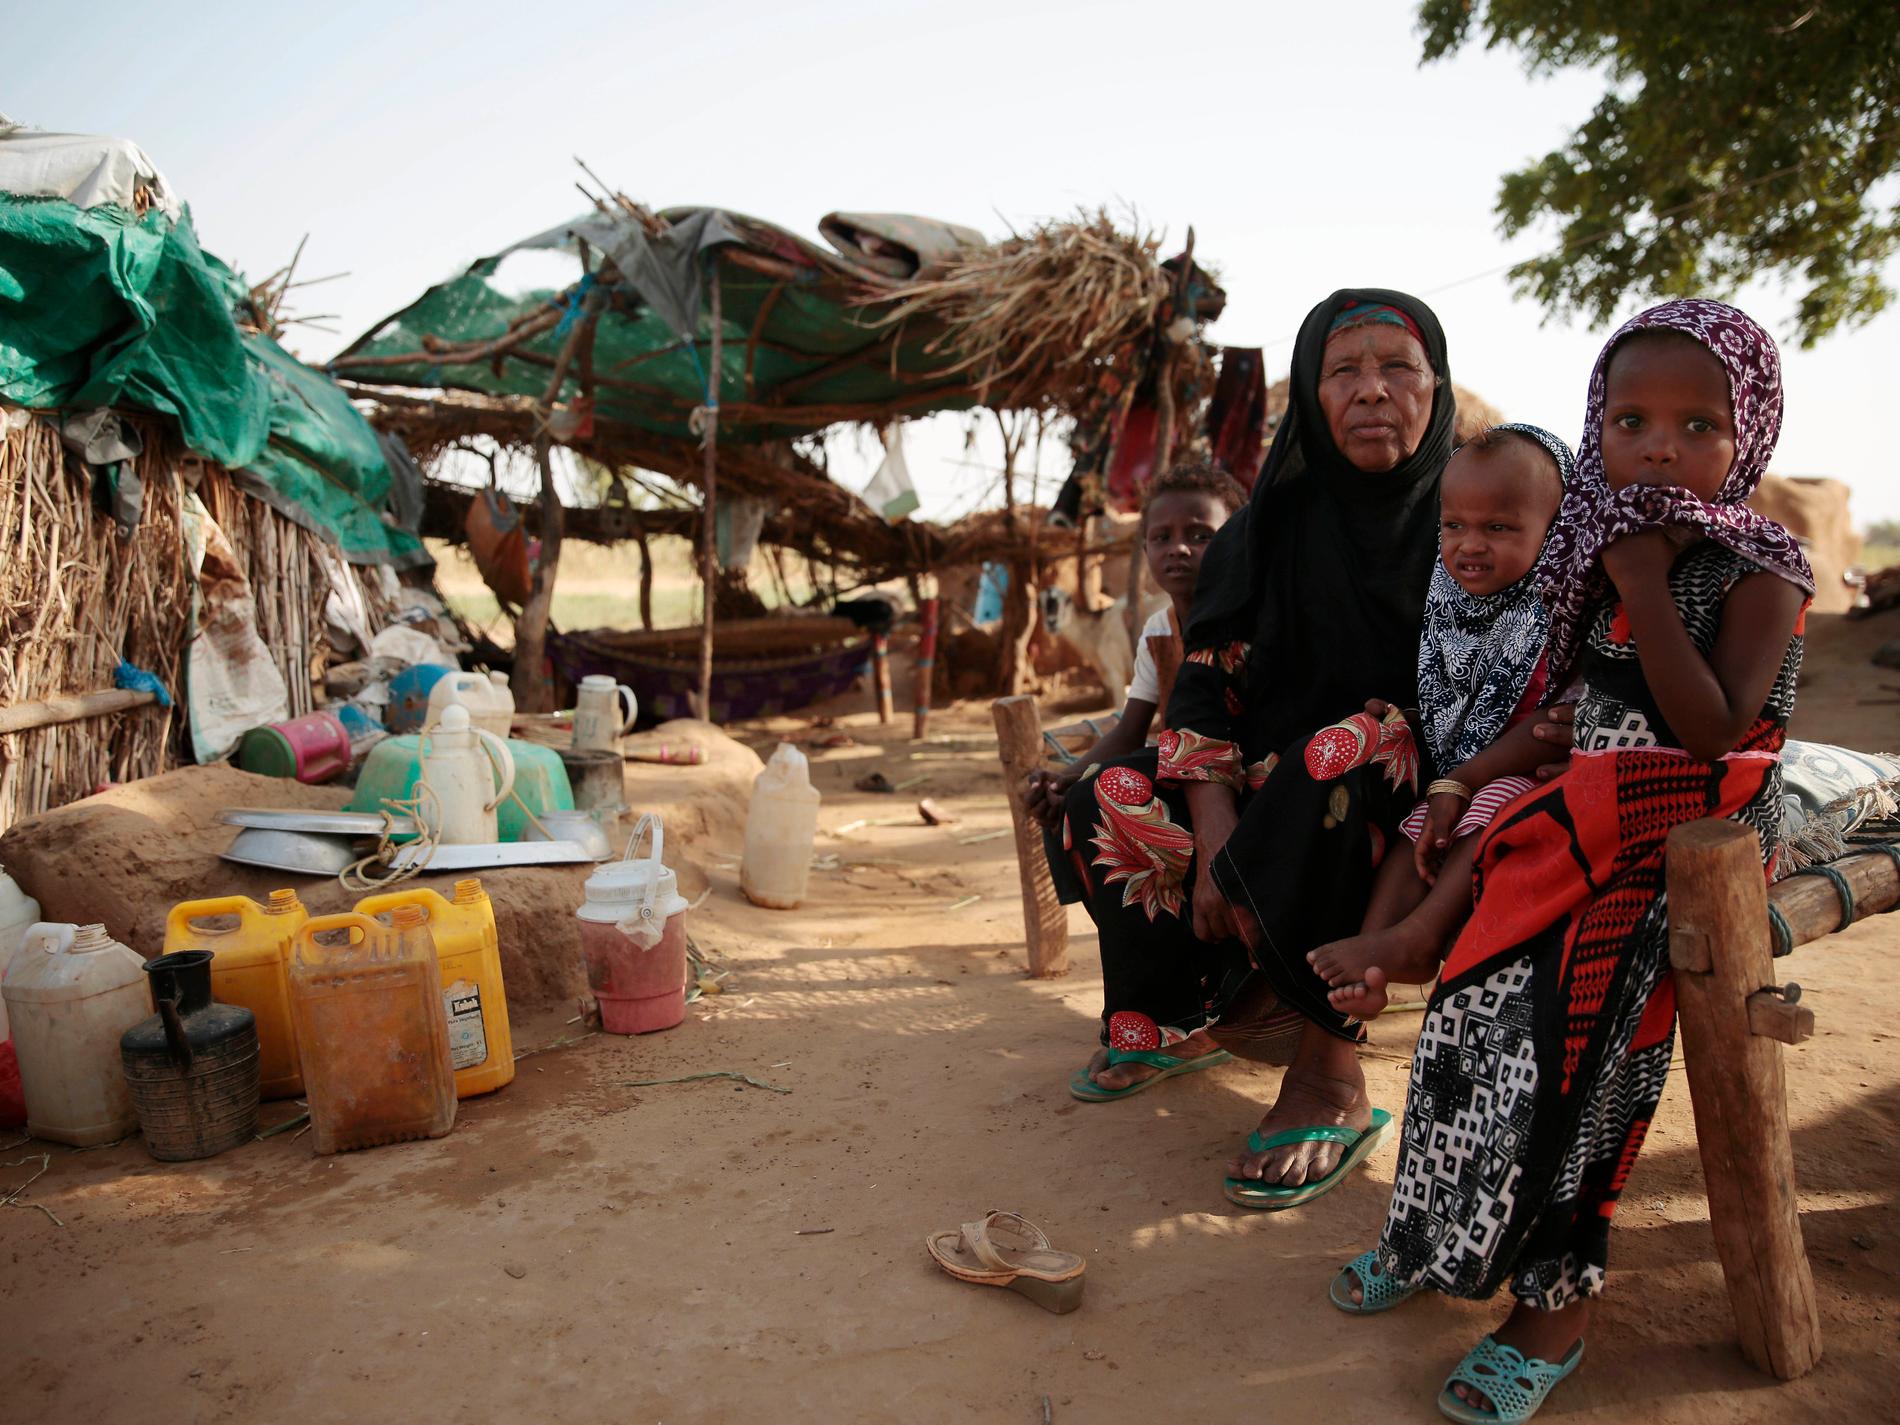 Larm: Världen har övergett Jemen